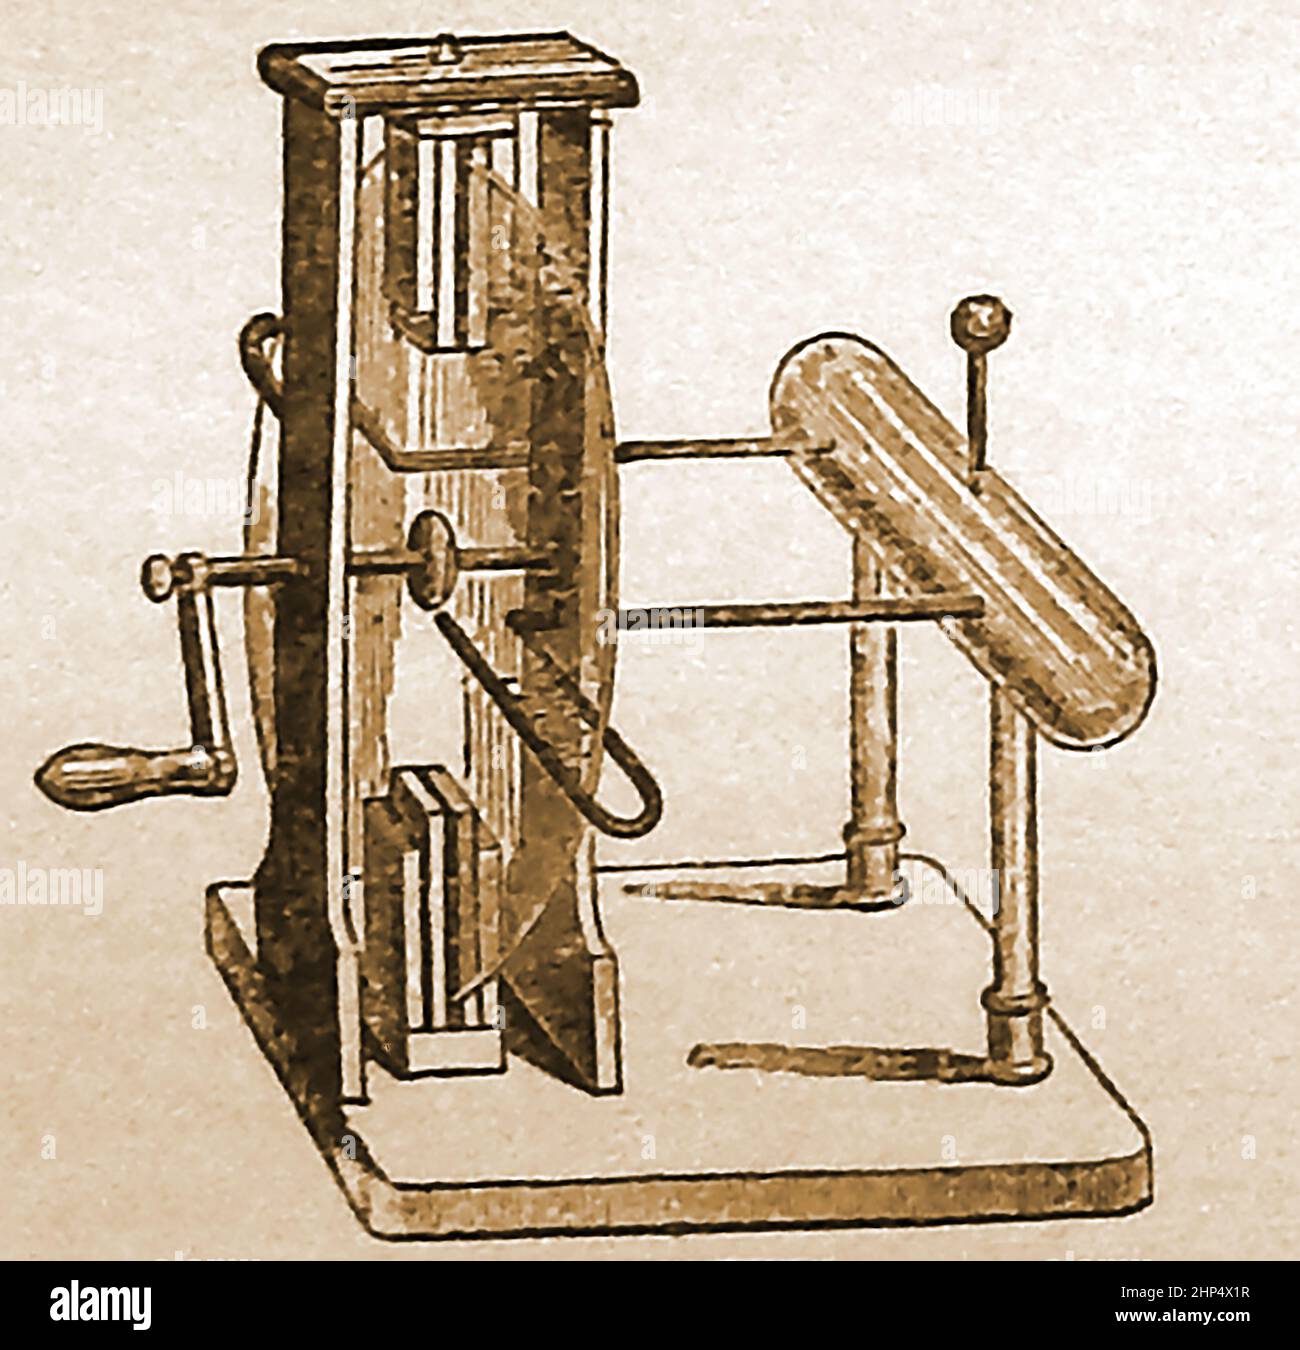 PRIMI ESPERIMENTI DI ELETTRICITÀ - un'incisione di fine 19th secolo di una macchina elettrica a piastre per produrre elettricità. Foto Stock